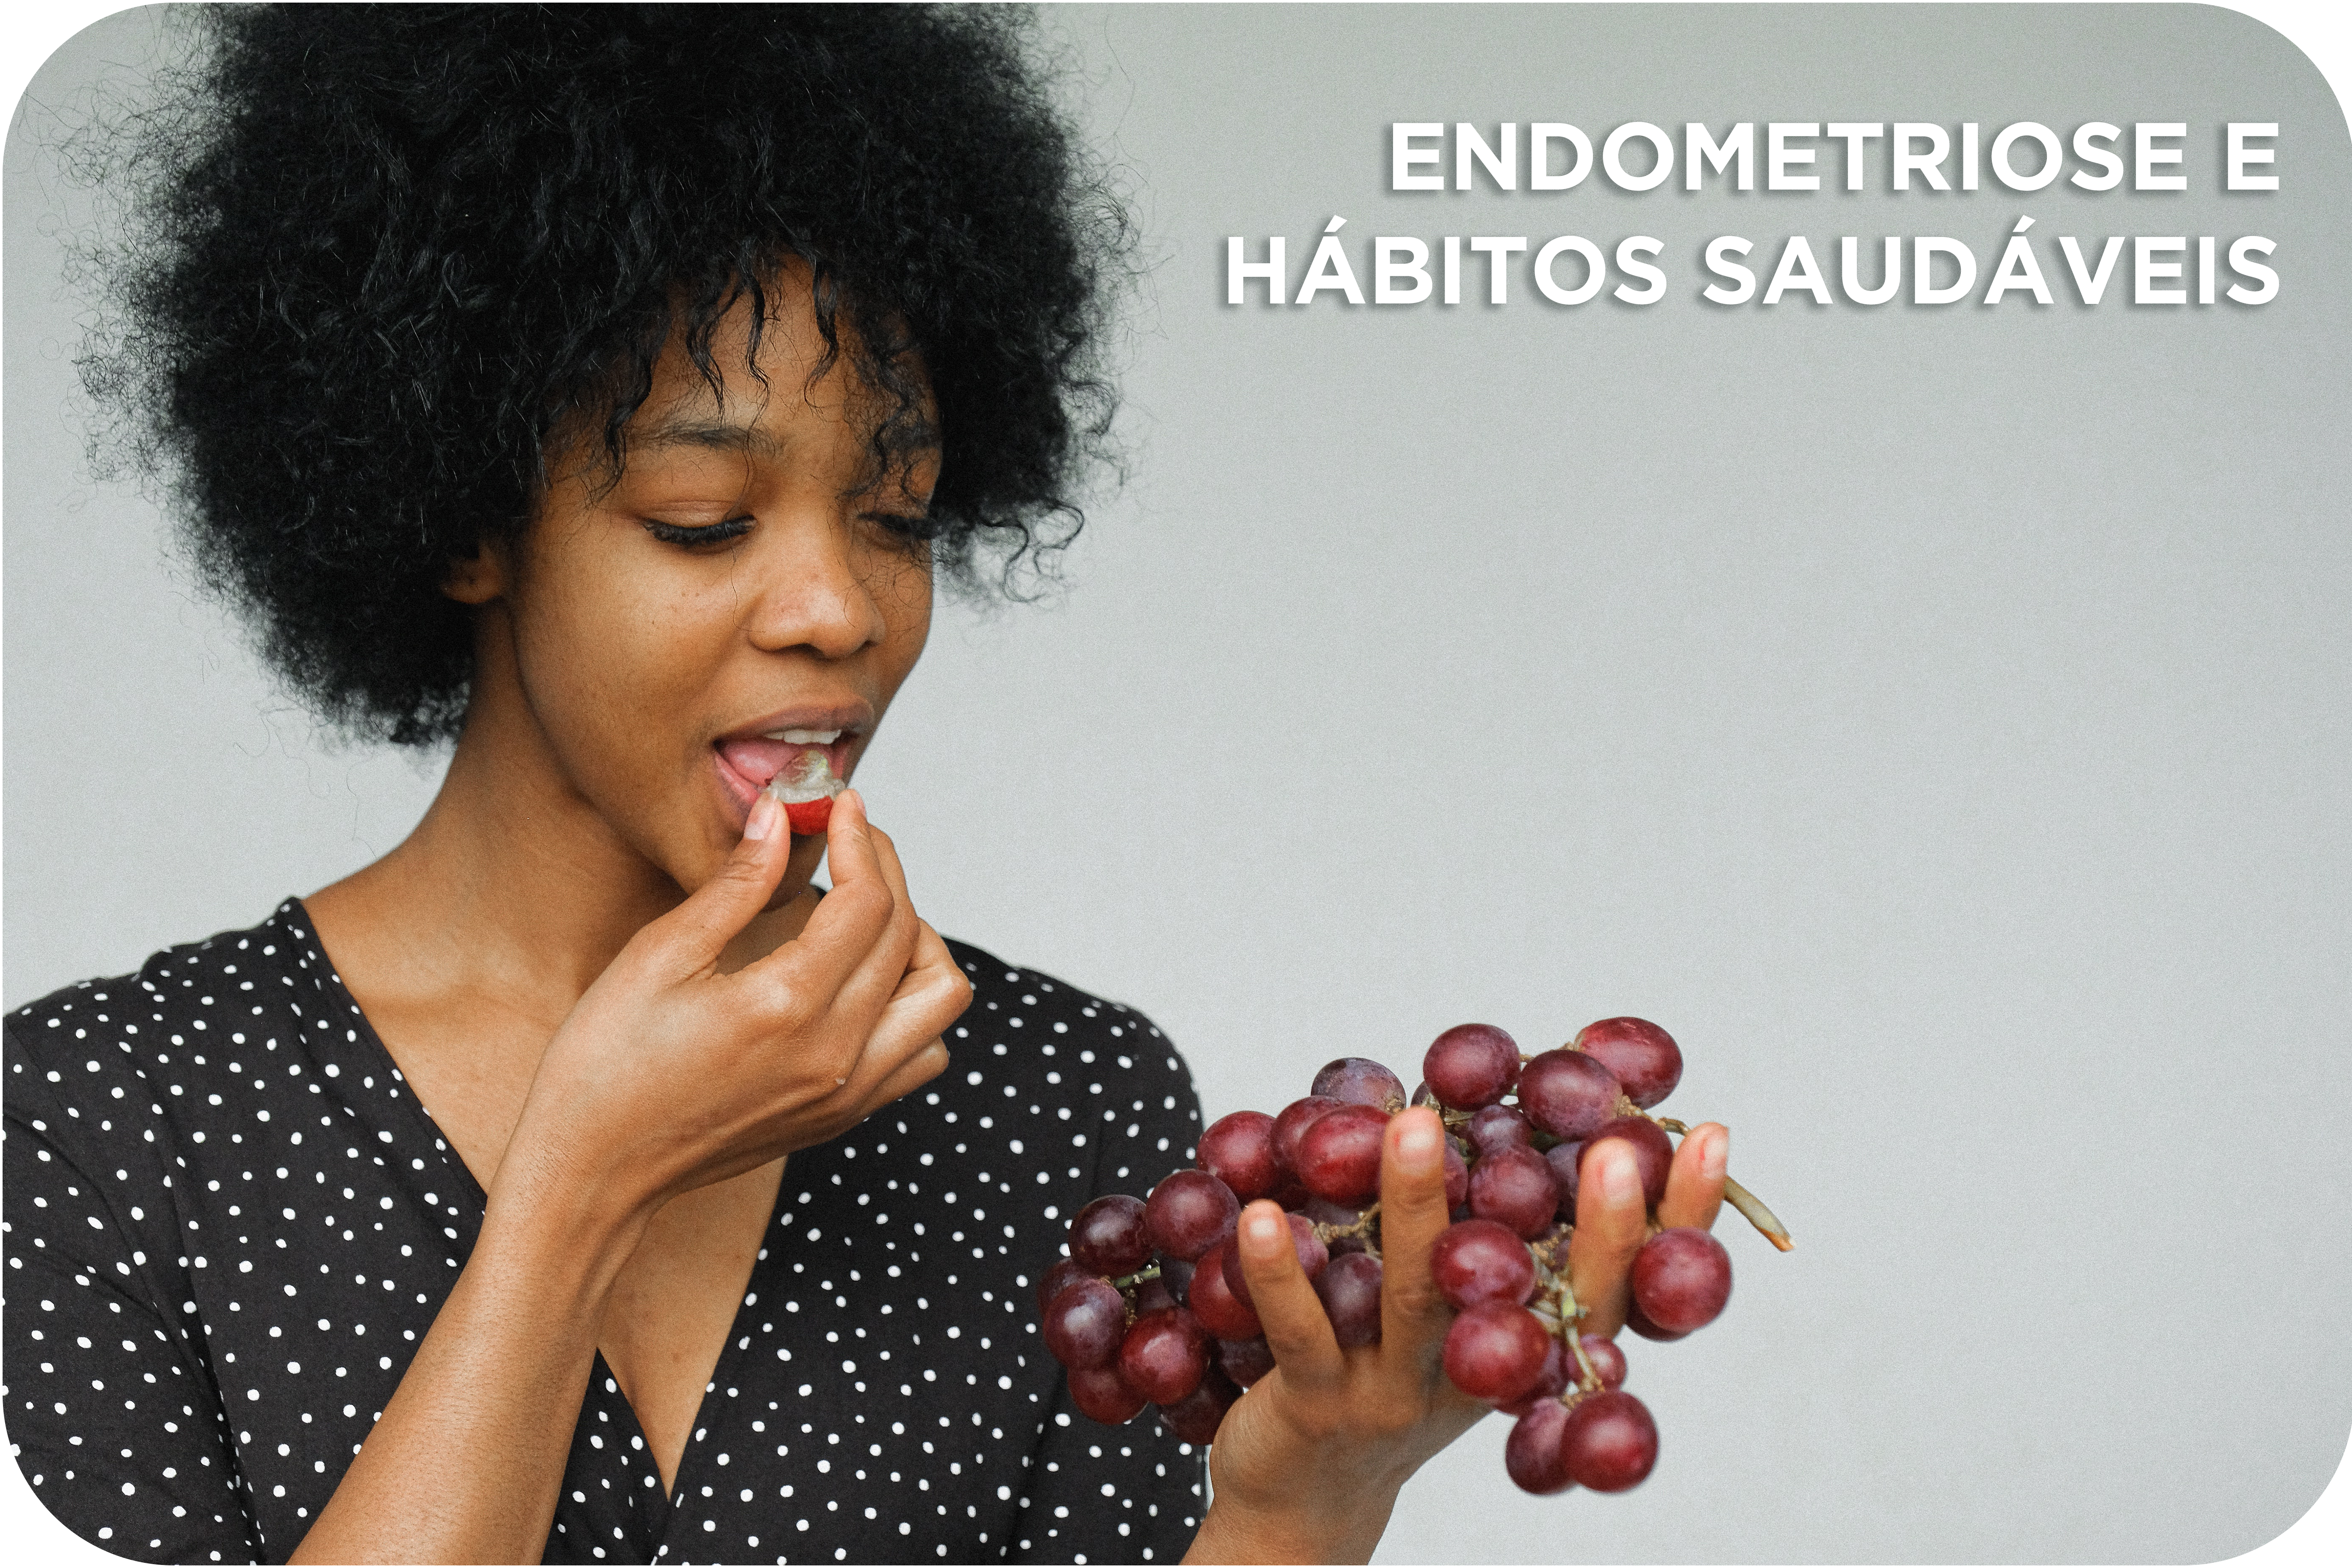 Endometriose e hábitos saudáveis